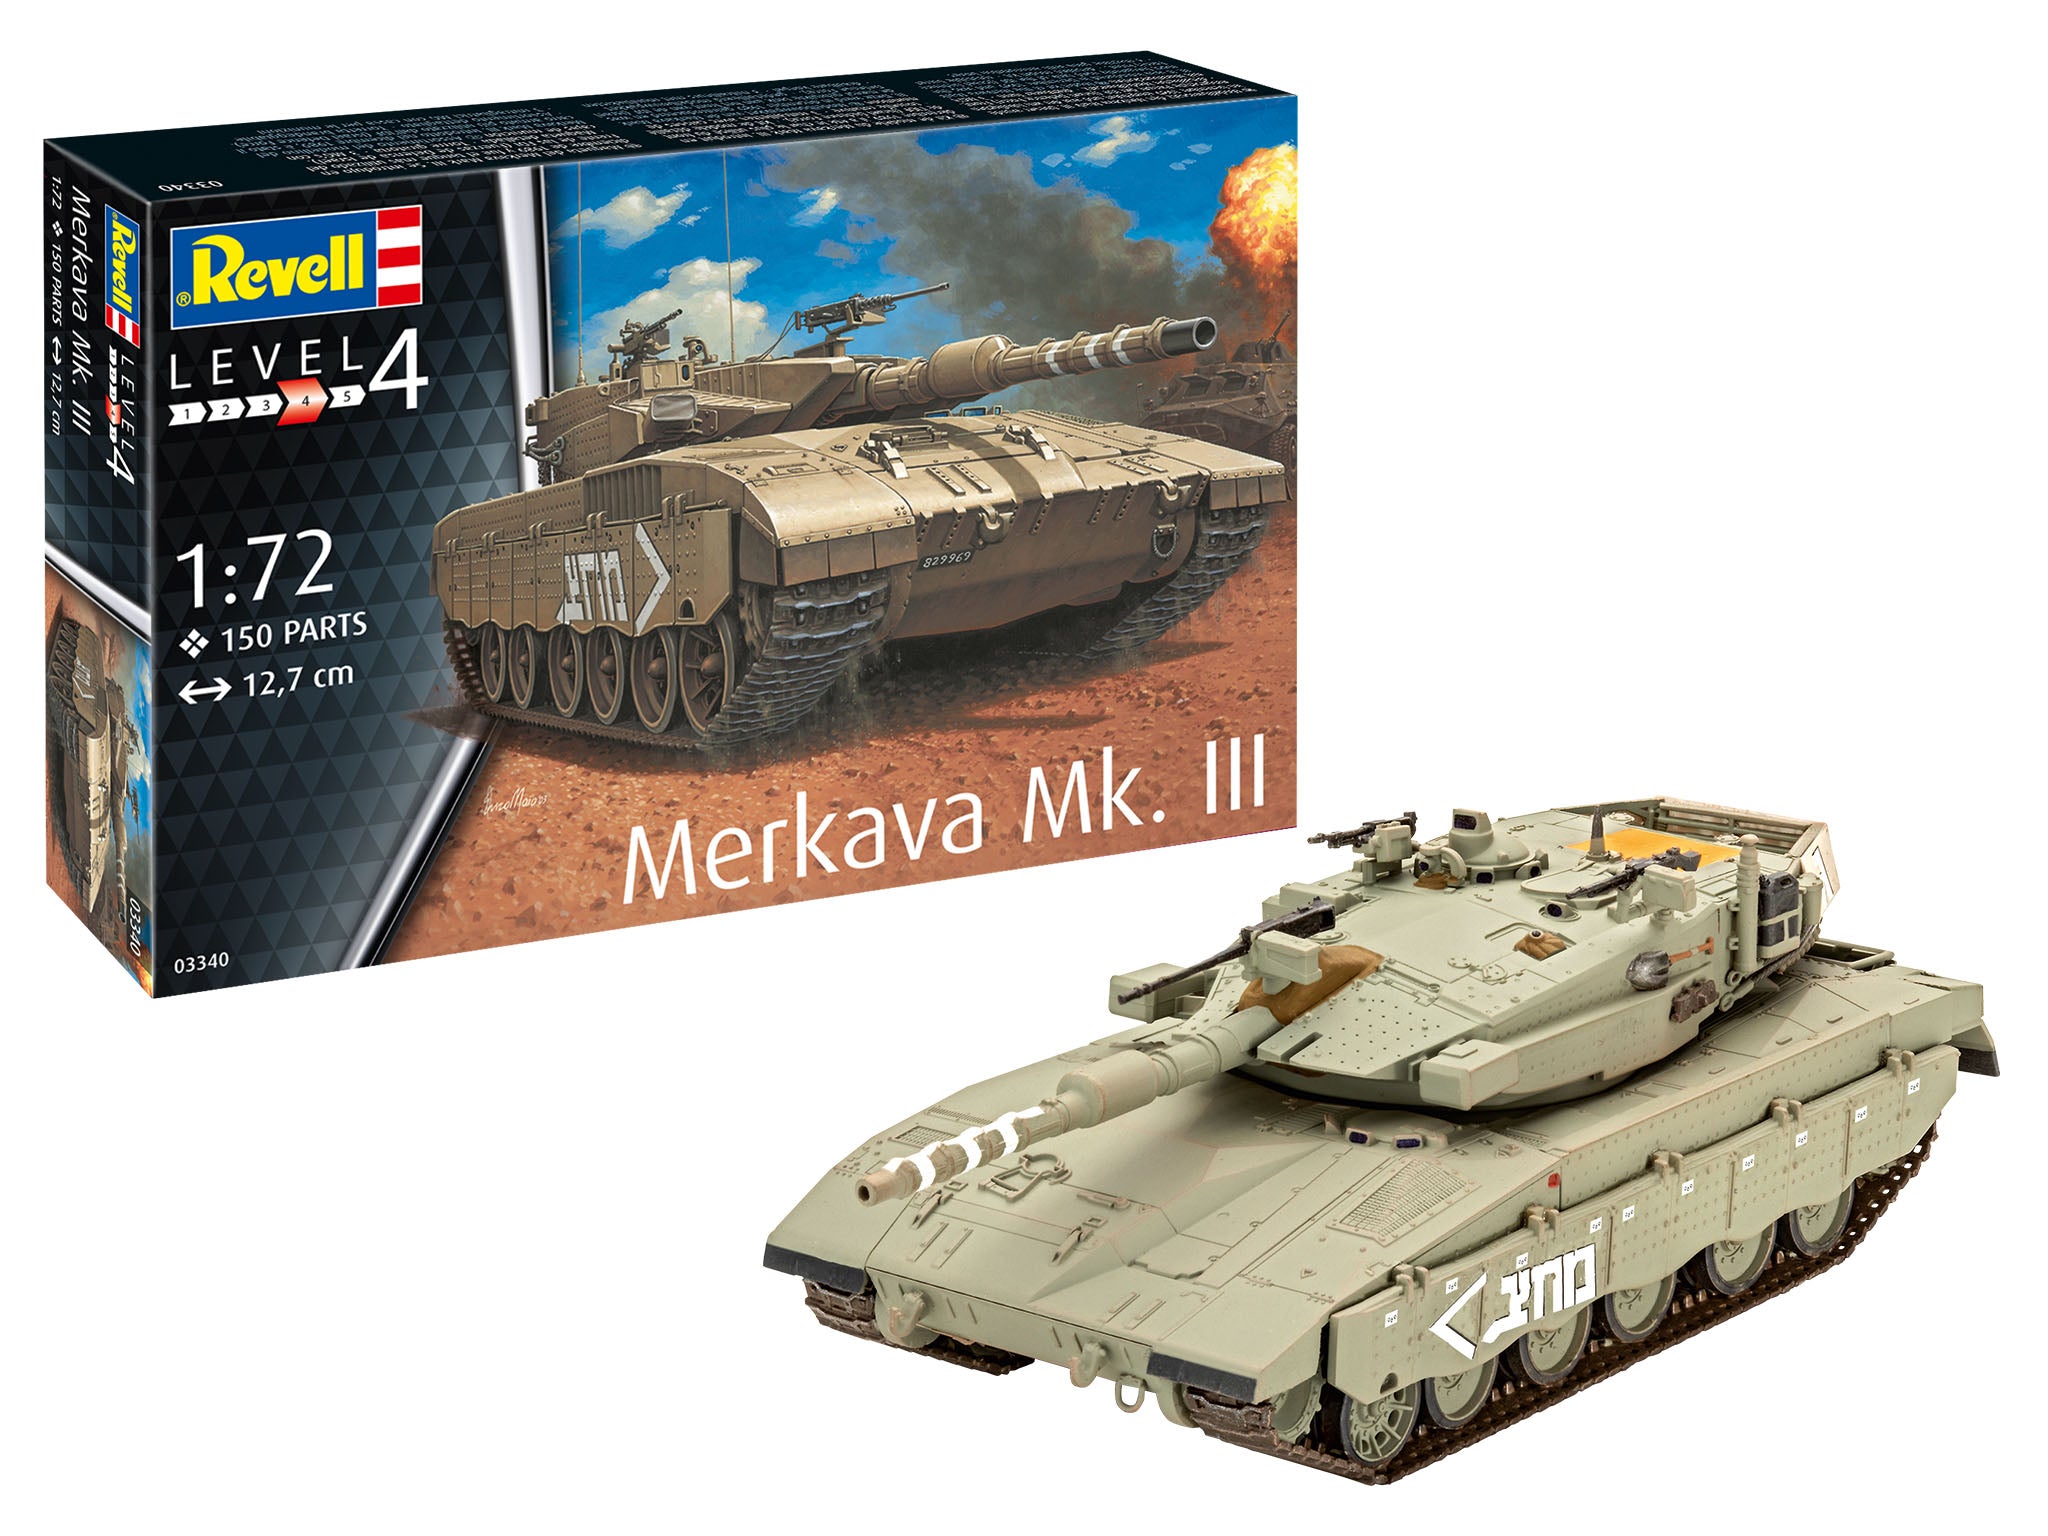 Revell Merkava Mk.III Tank Model Kit